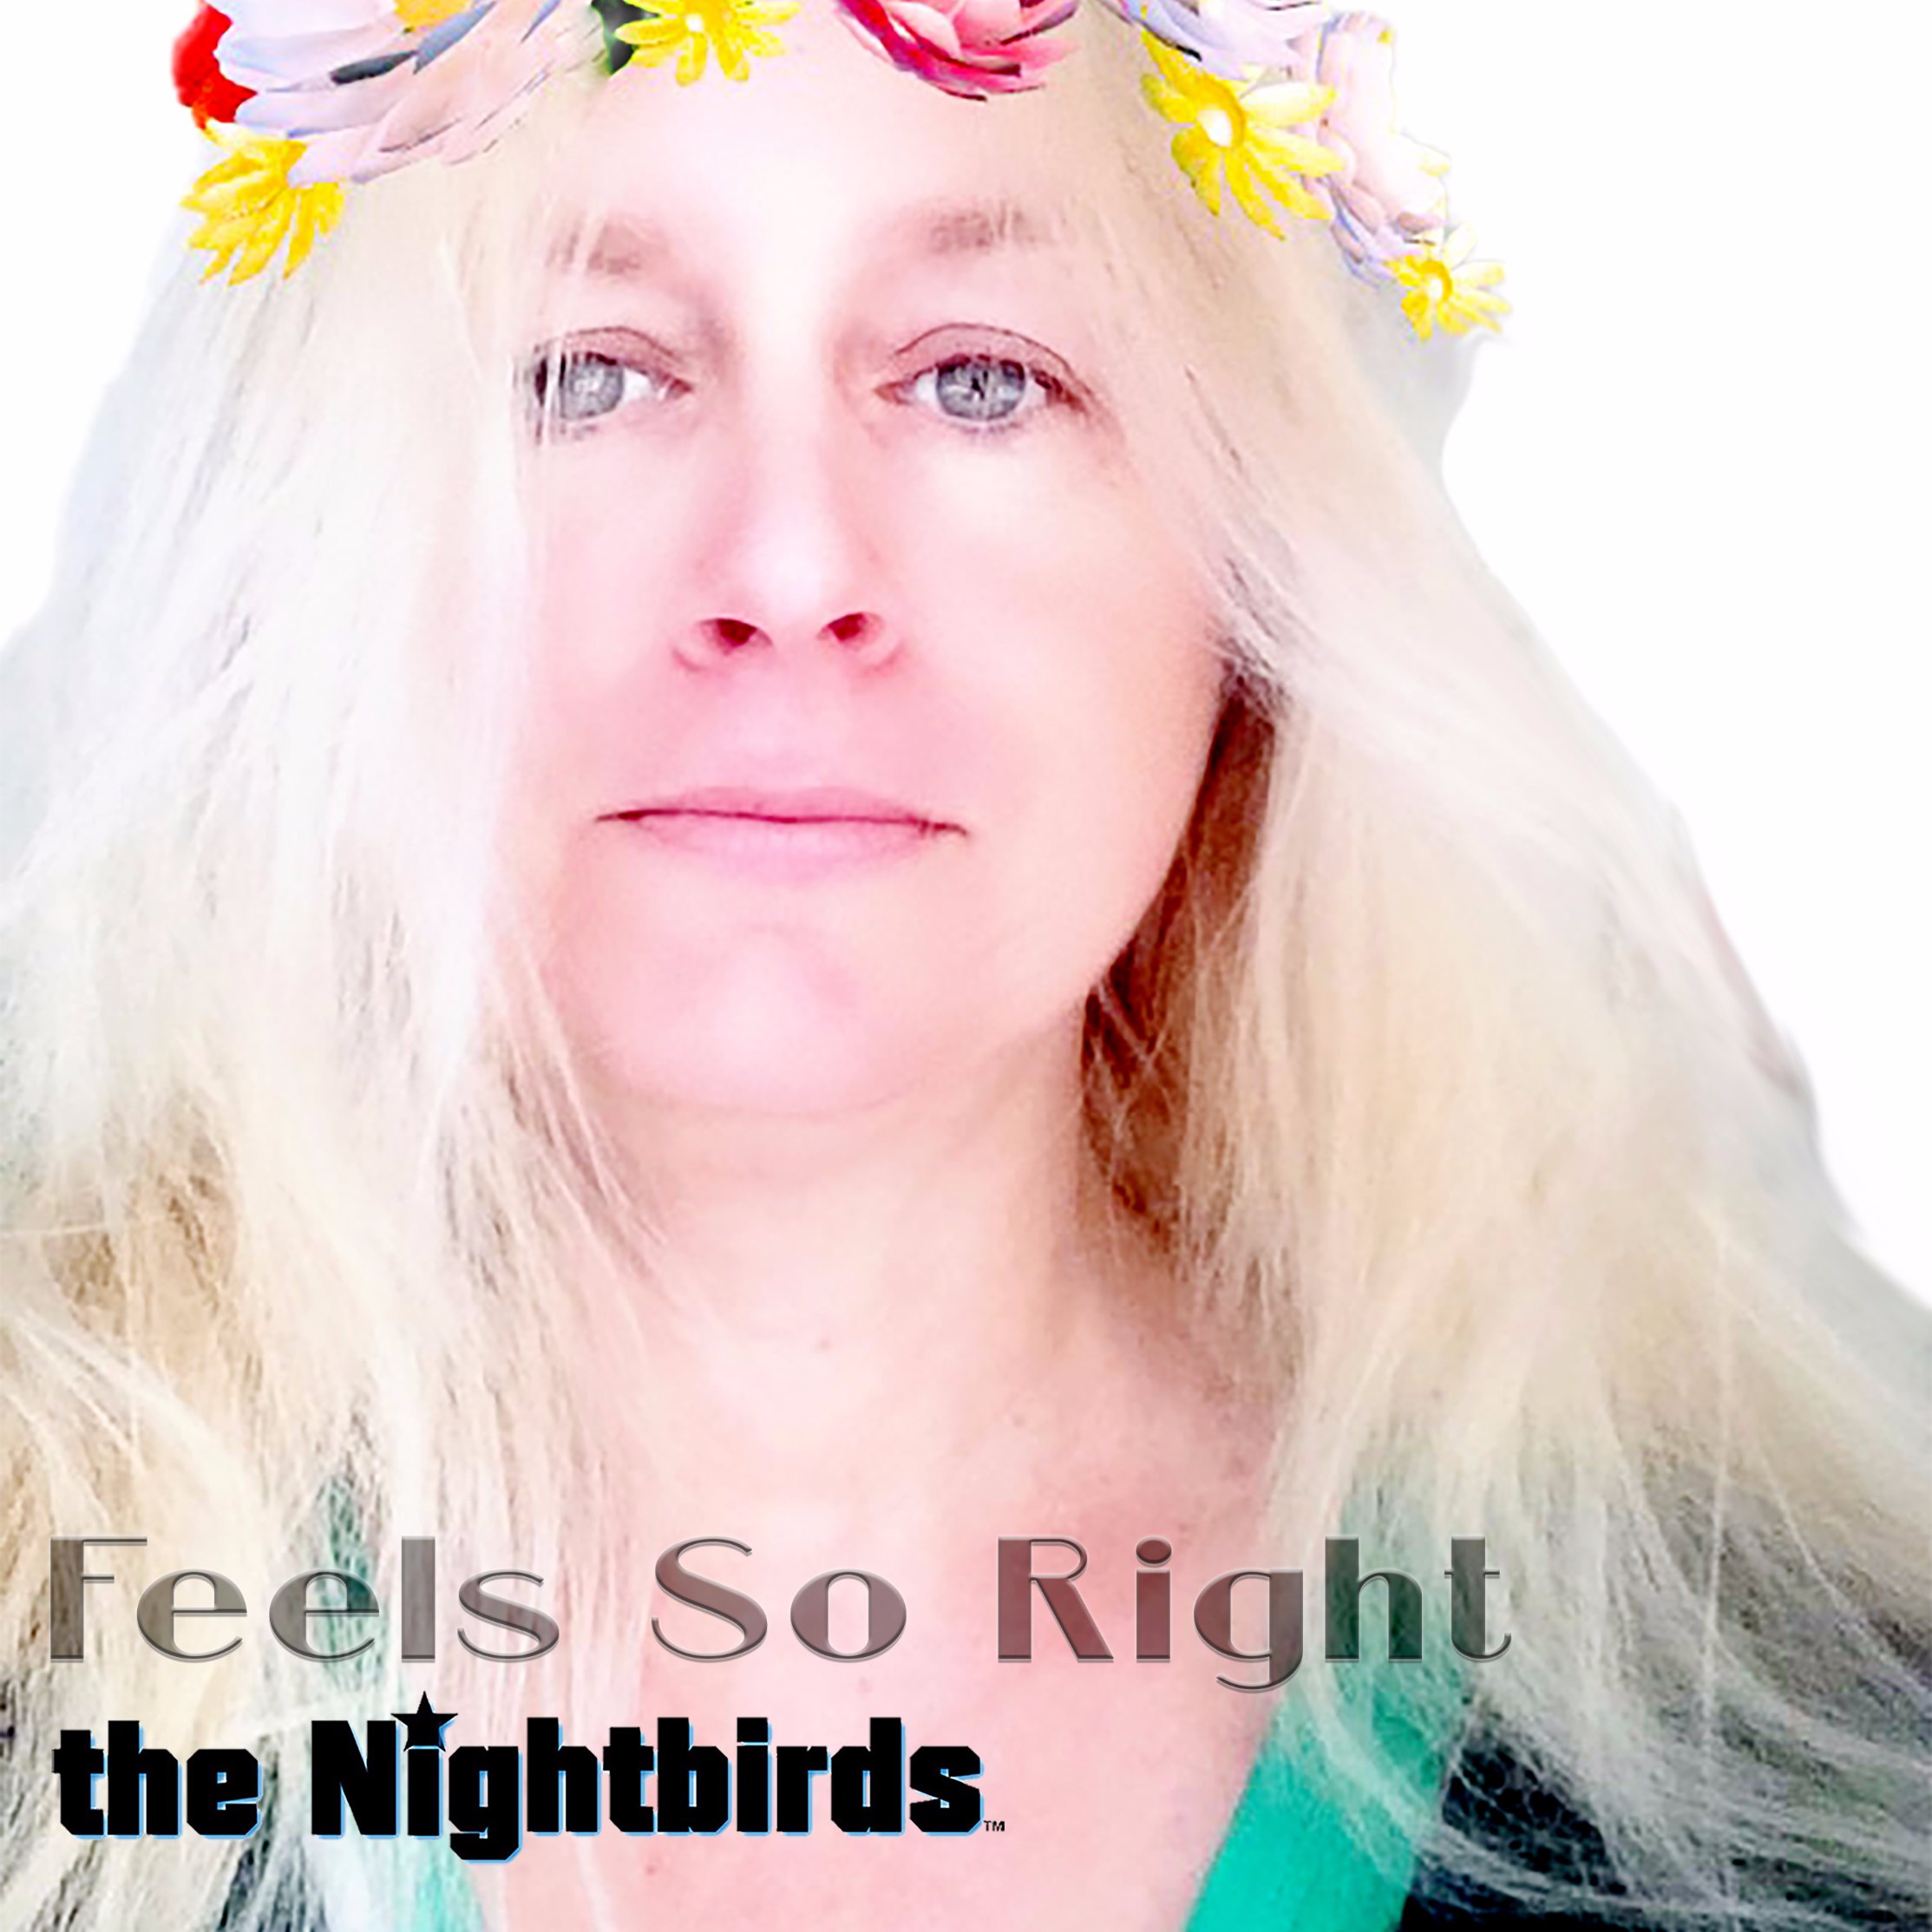 The Nightbirds Feels So Right